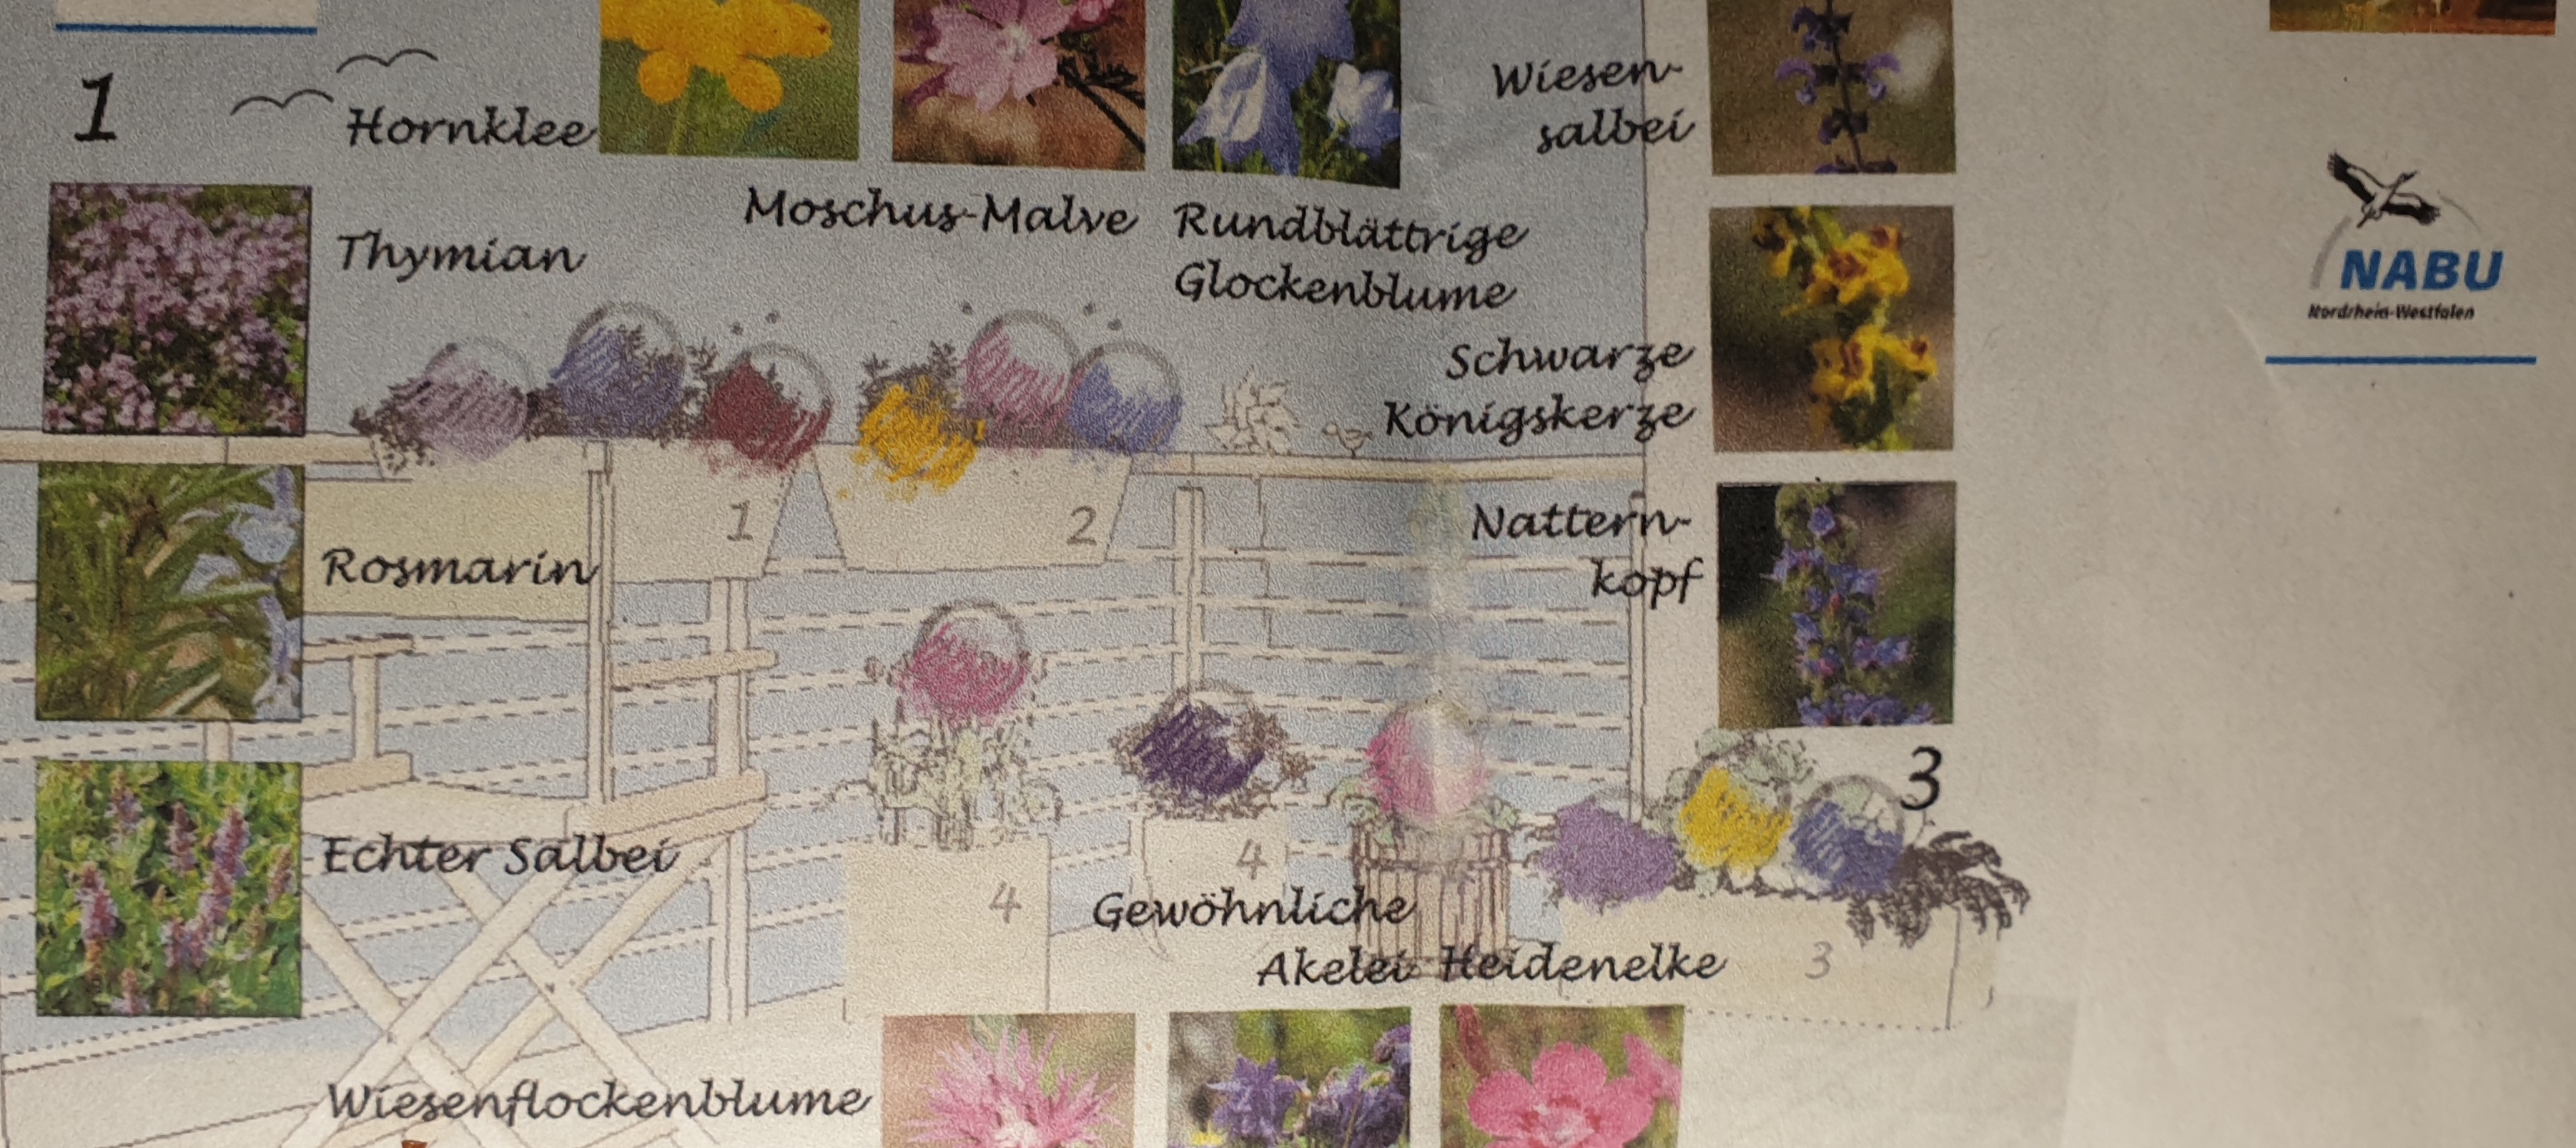 Der NABU Köln stellt nicht nur Wildpflanzen, sondern auch einen Pflanzplan für einen Wildpflanzen-Balkon zur Verfügung © NABU/Köln